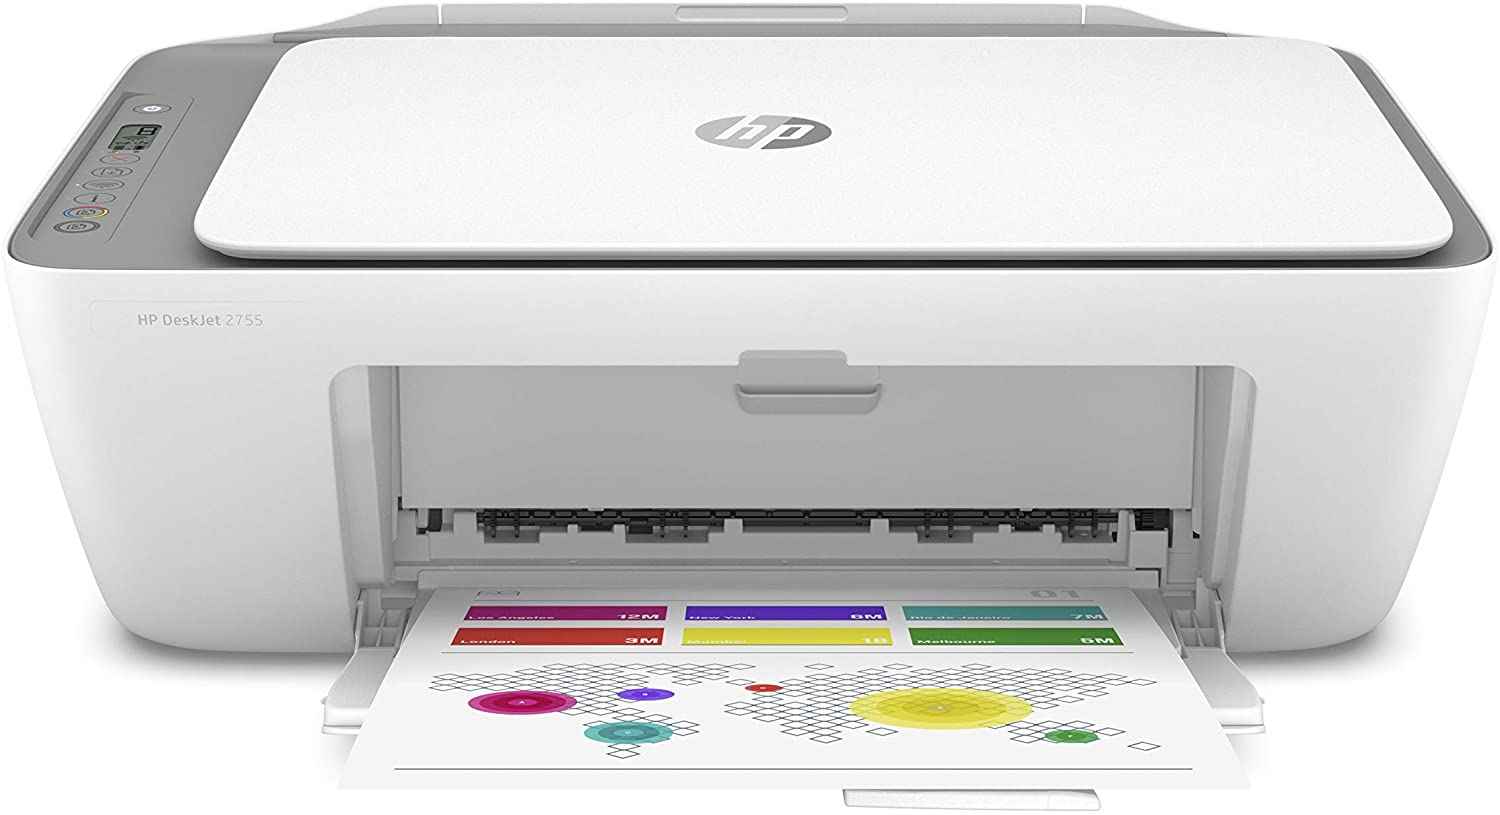 HP DeskJet 2755 Printer